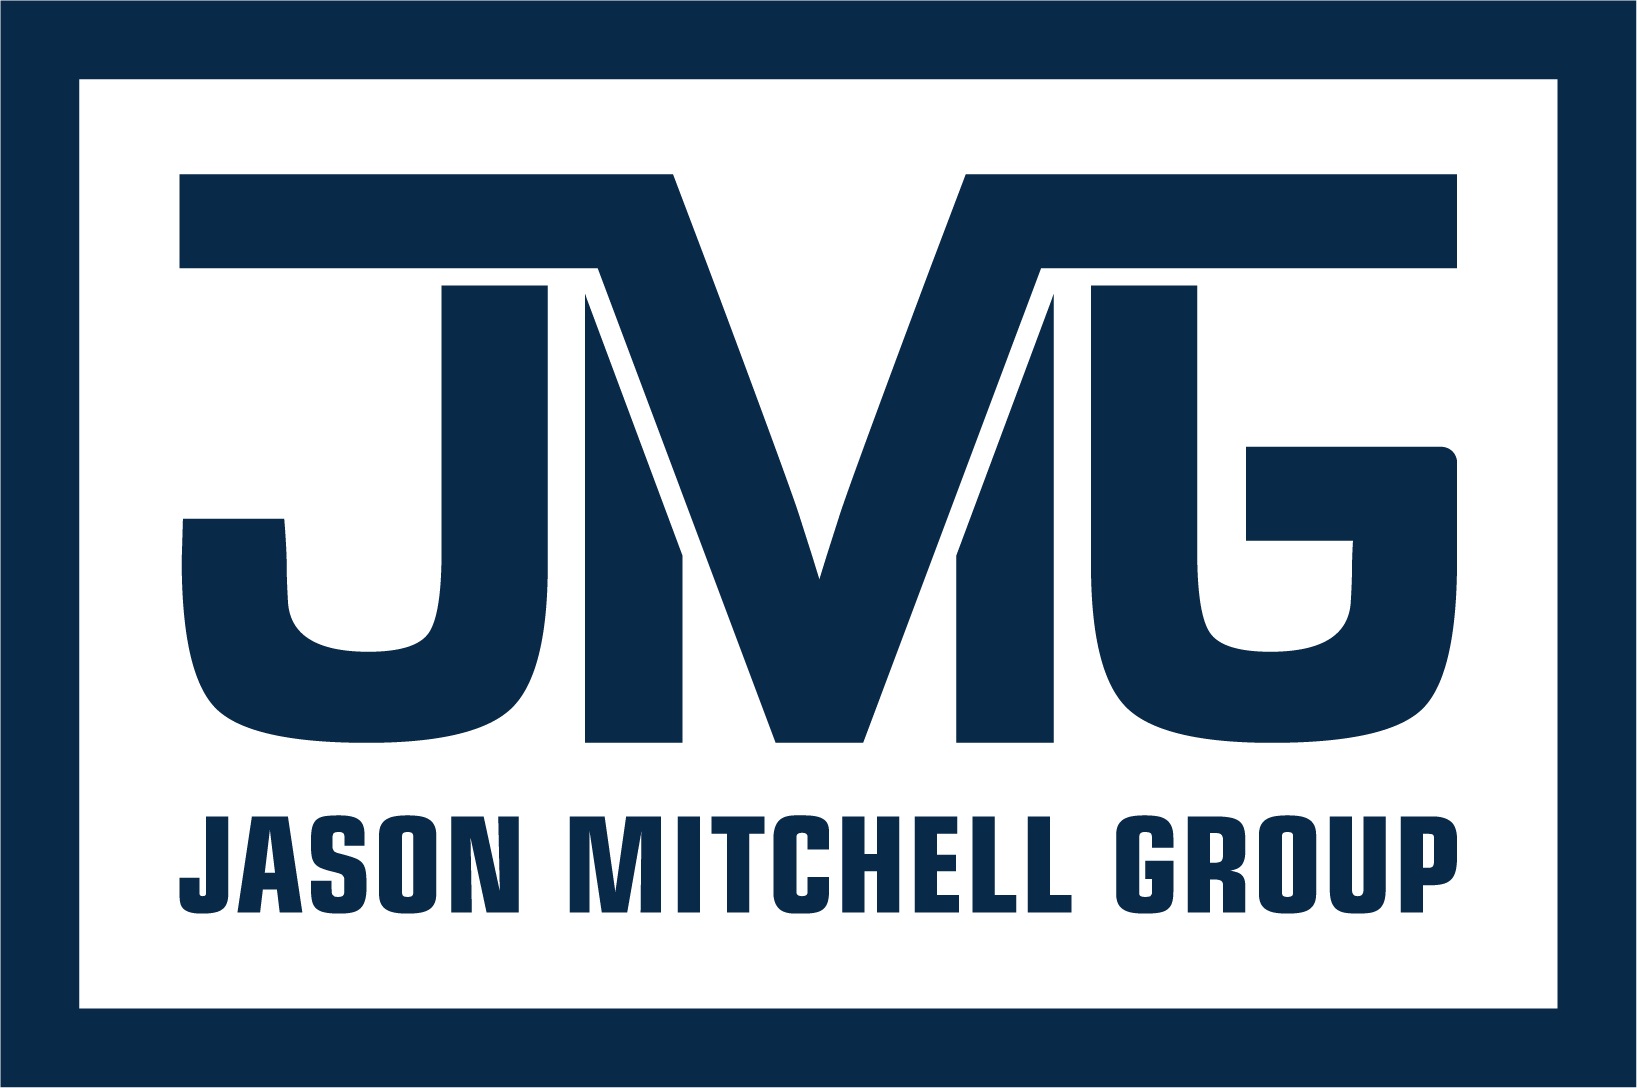 JMG Logo